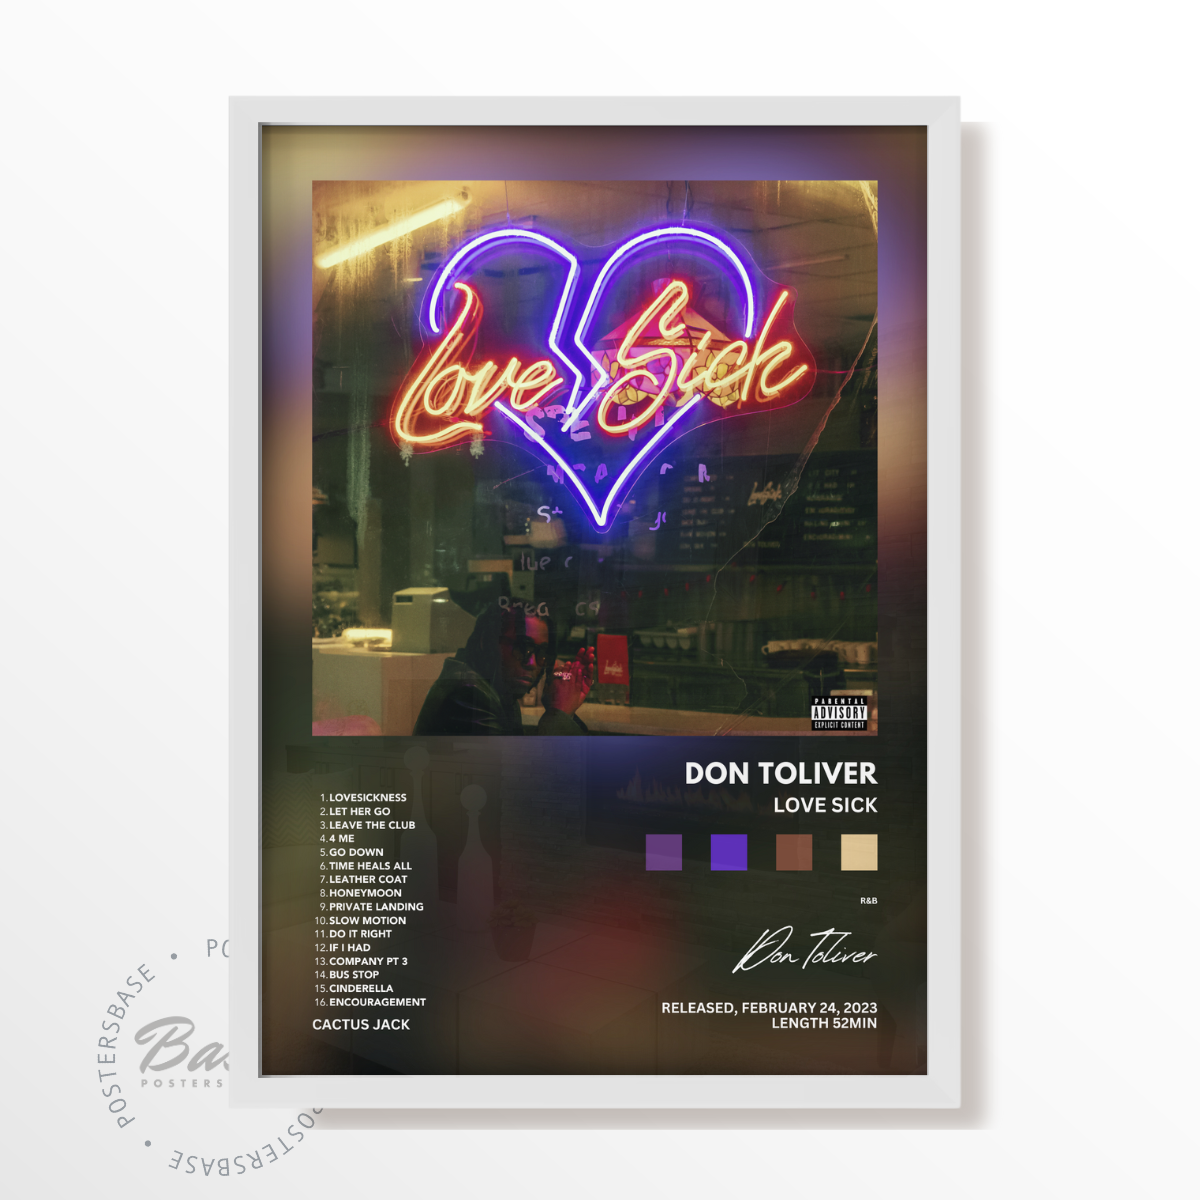 Don Toliver - Love Sick